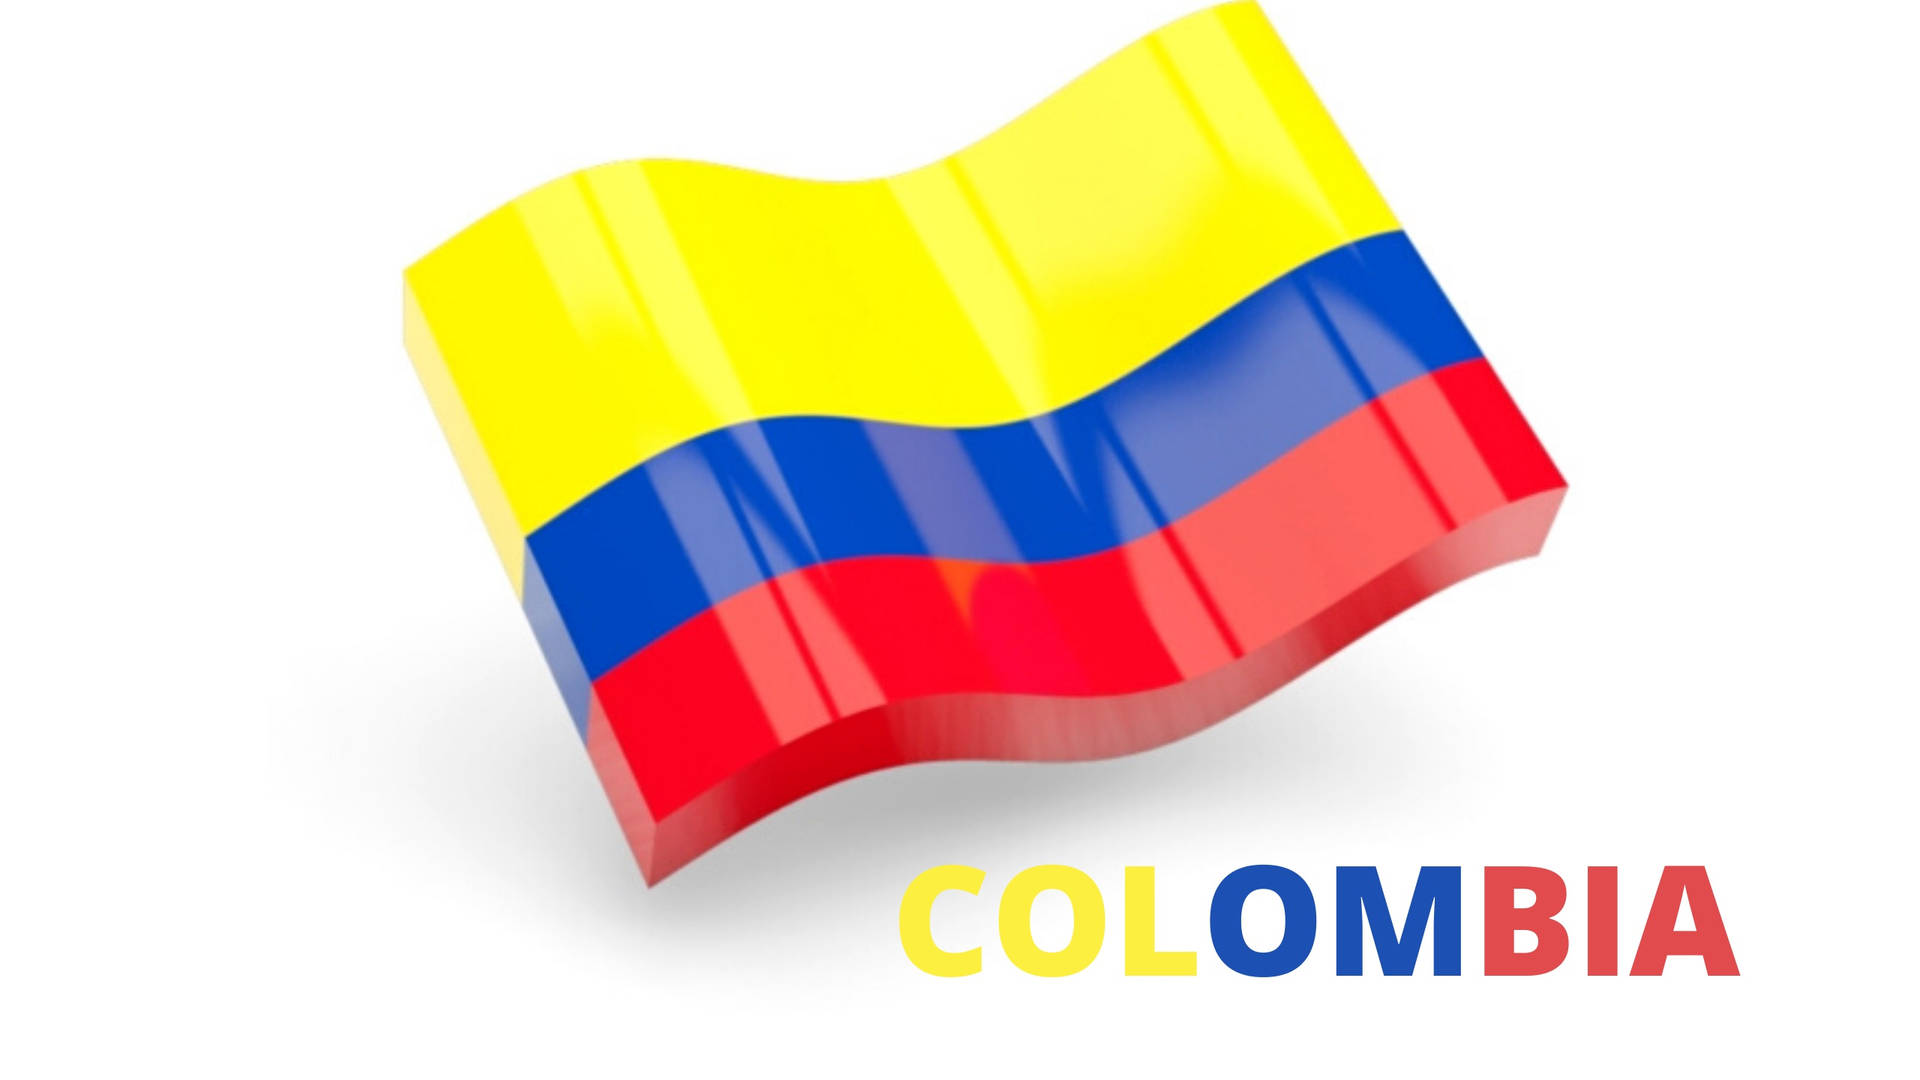 Legal Arte 3d Da Bandeira Da Colômbia Com Efeito De Brilho Para O Fundo Da Tela Do Computador Ou Celular! Papel de Parede